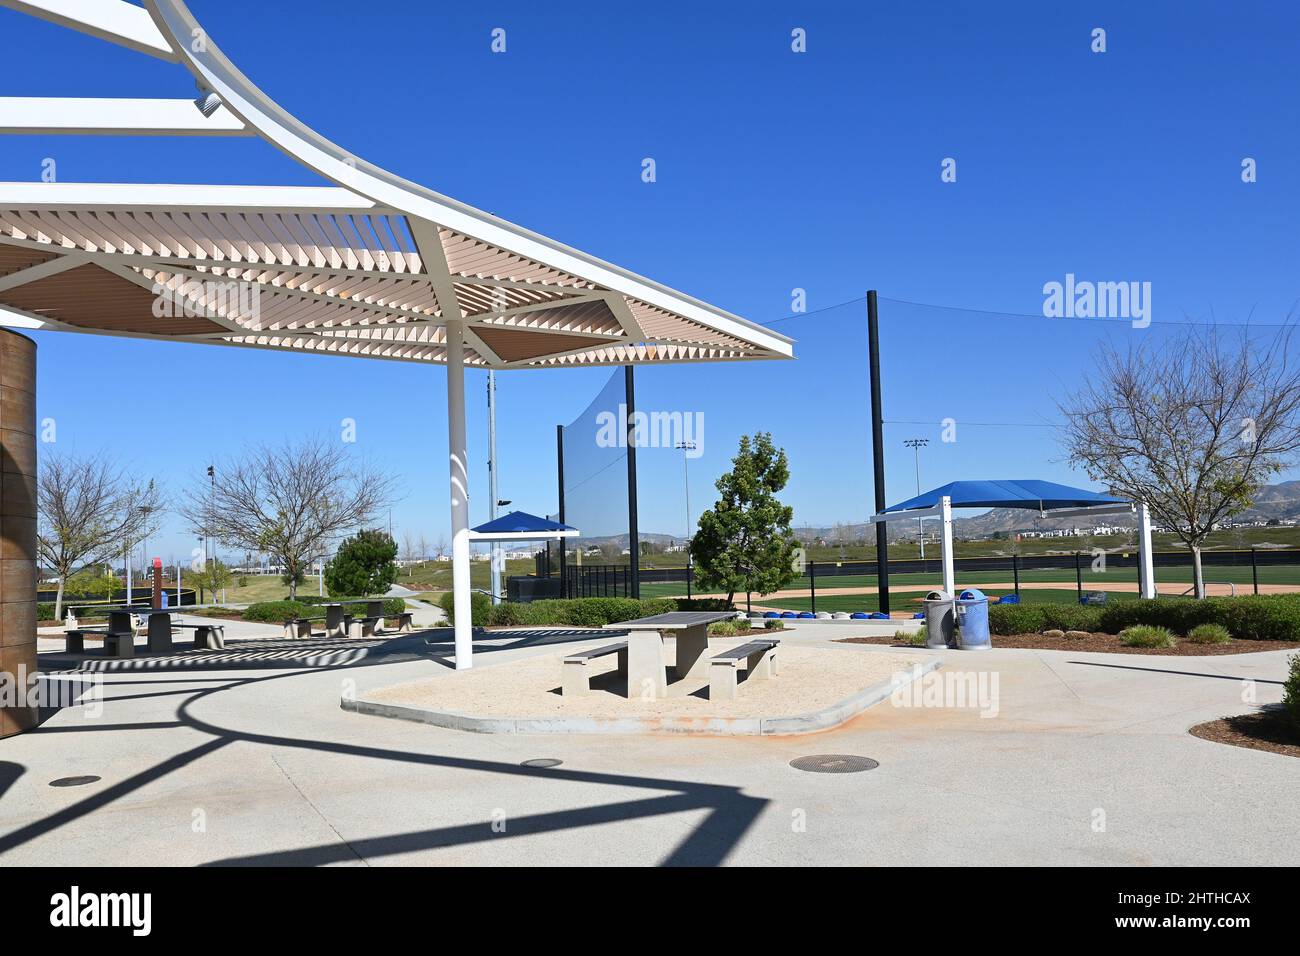 IRVINE, KALIFORNIEN - 25. FEBRUAR 2022: Picknickplatz und Einrichtungen im Orange County Great Park Baseballkomplex. Stockfoto